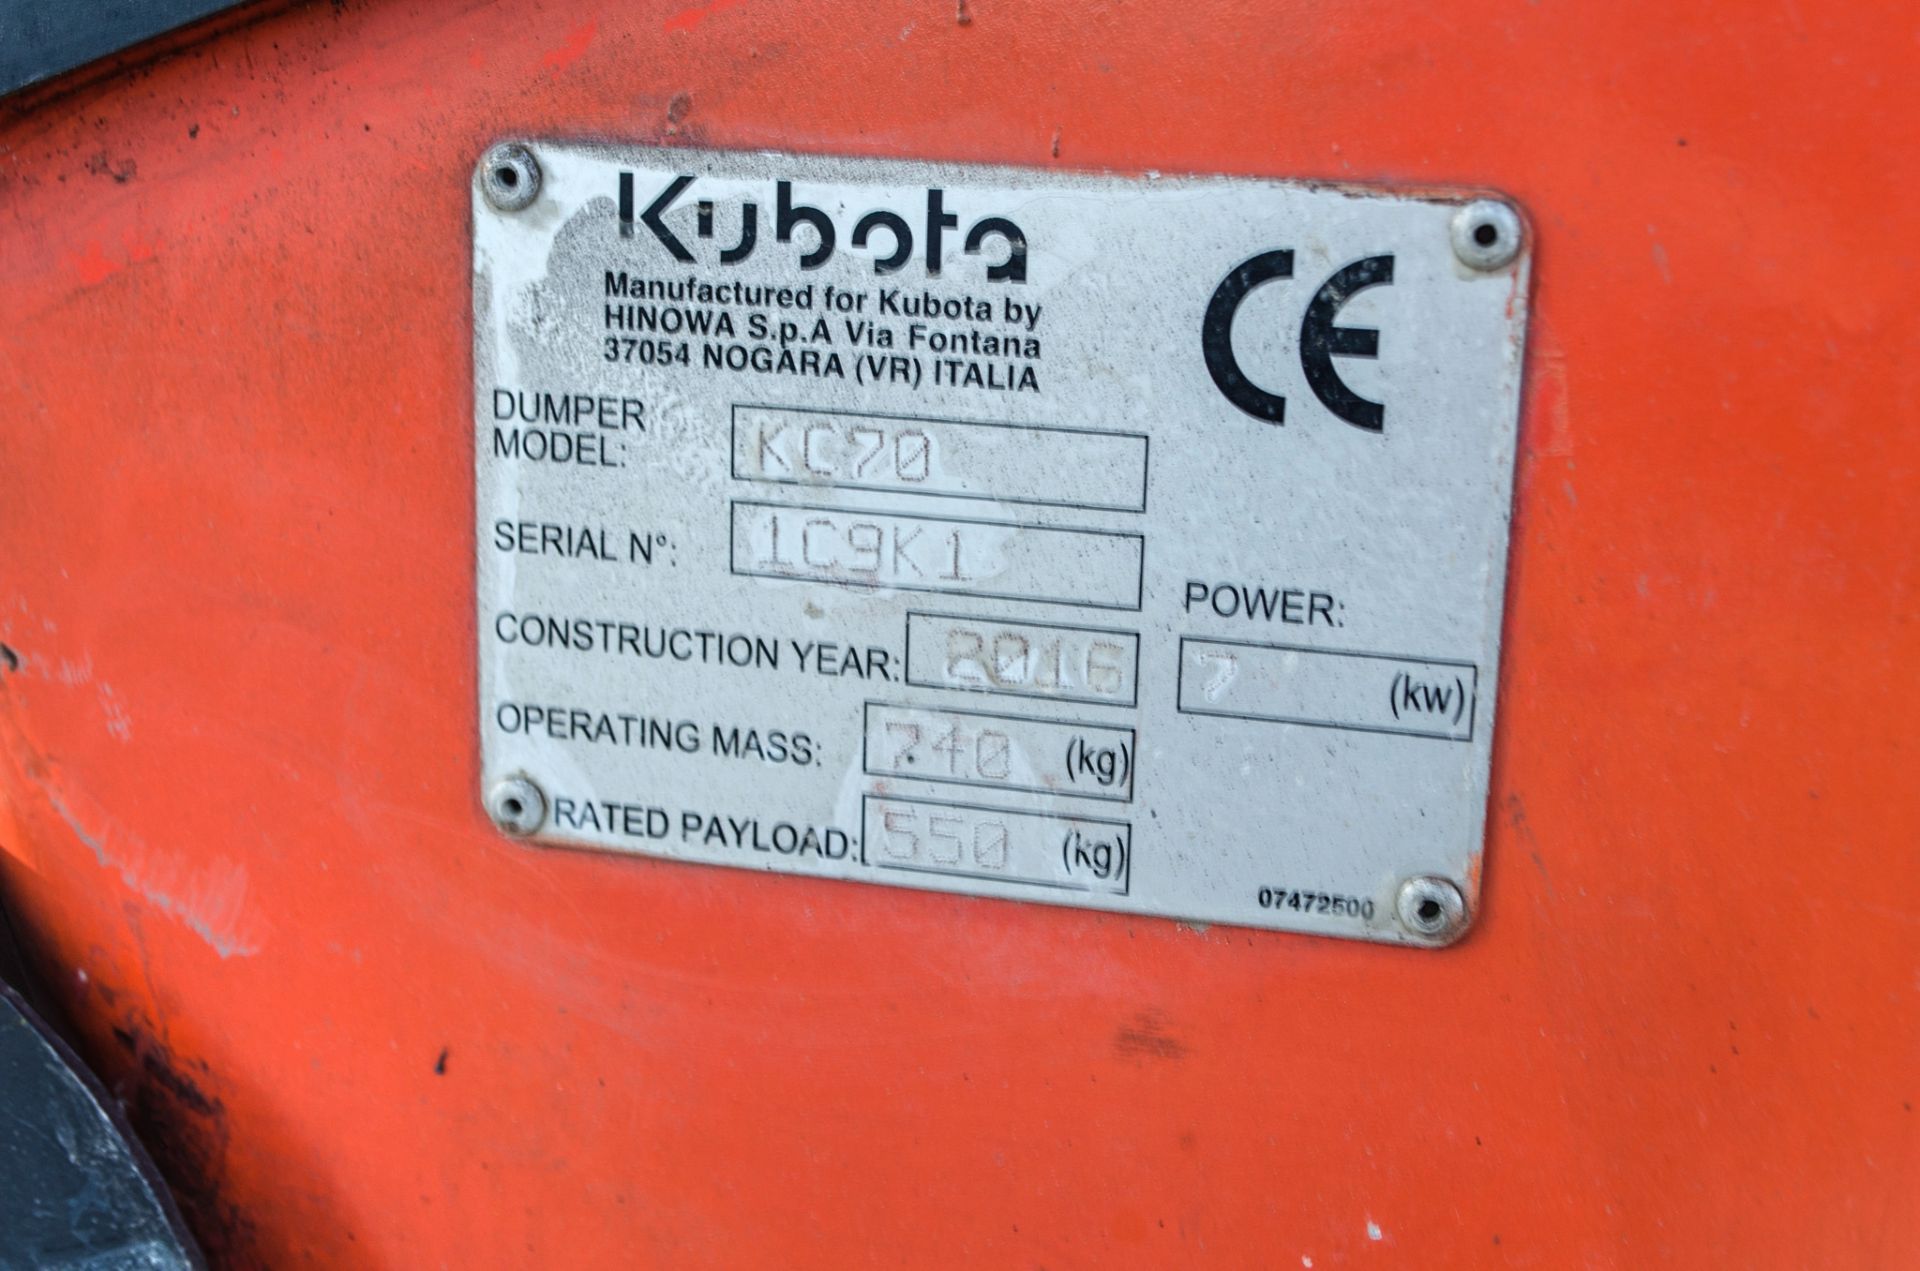 Kubota KC70 0.7 tonne hi-tip rubber tracked walked behind dumper Year: 2016 S/N: 1C9K1 PSL005 - Image 15 of 15